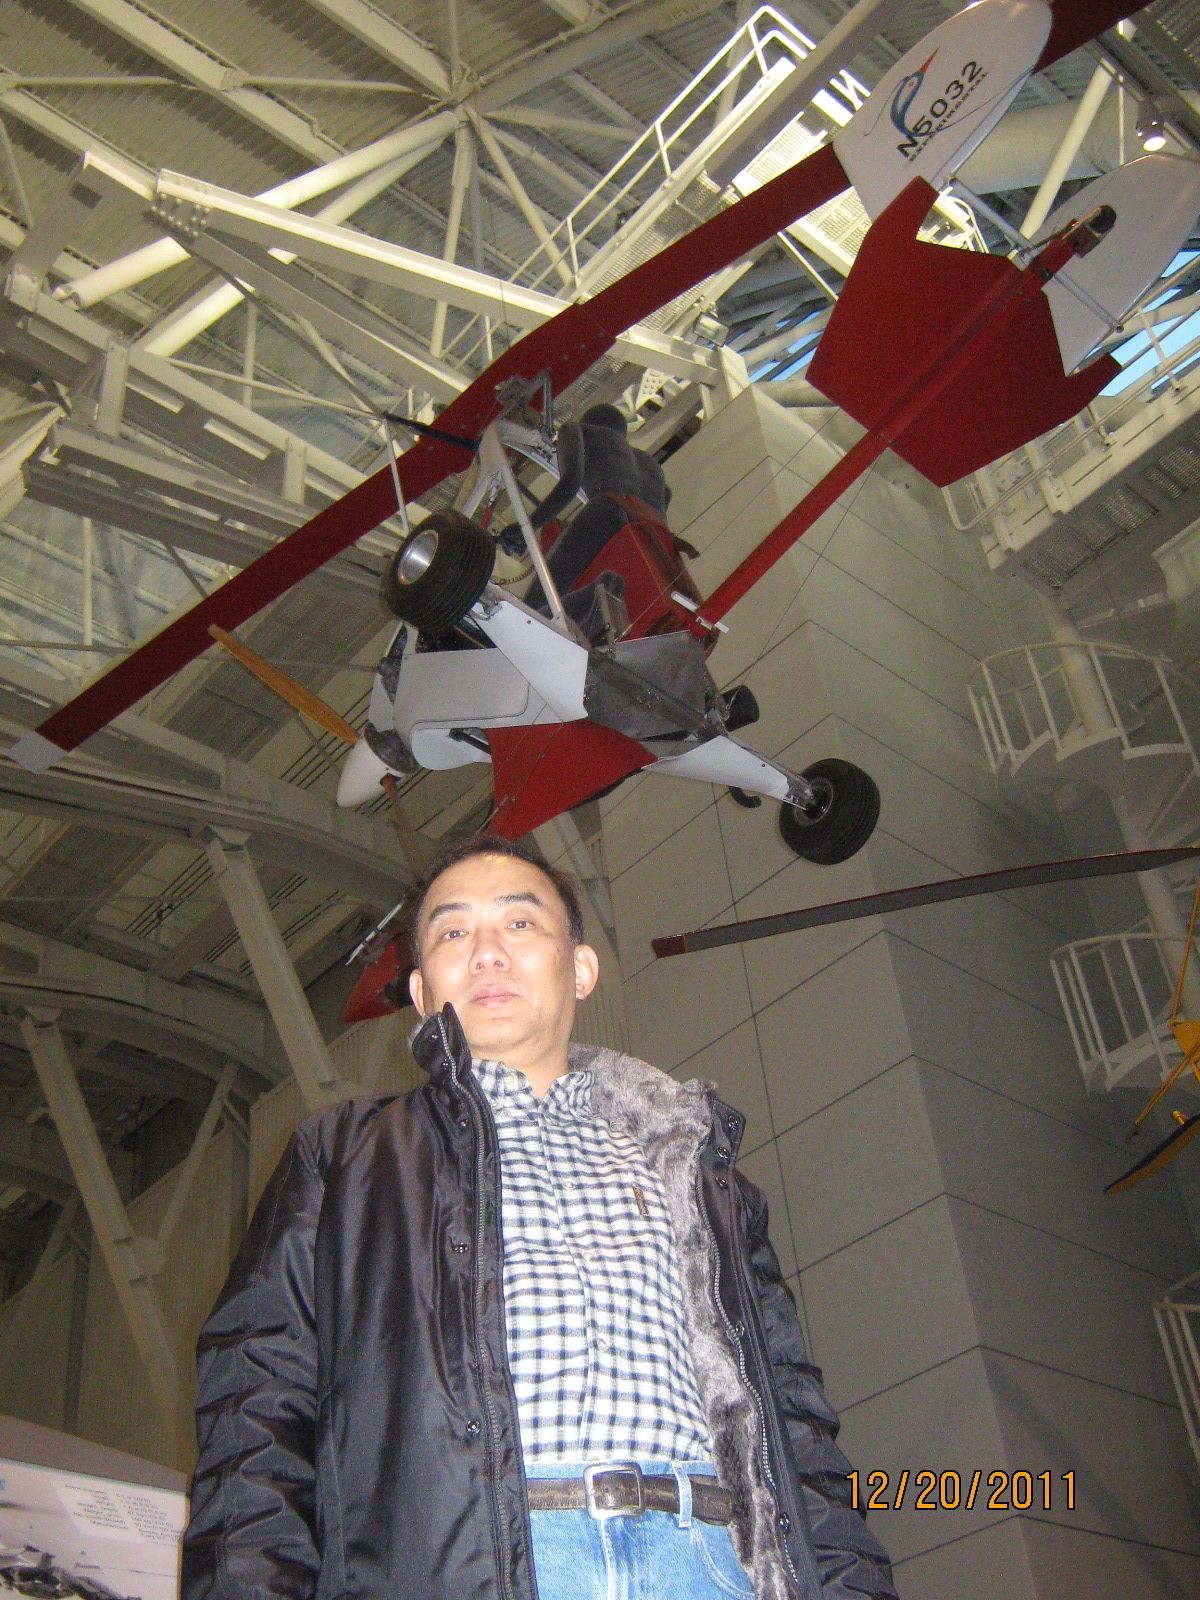 IMG_1851.JPG : Dec 20, 2011 Air and Space Museum again